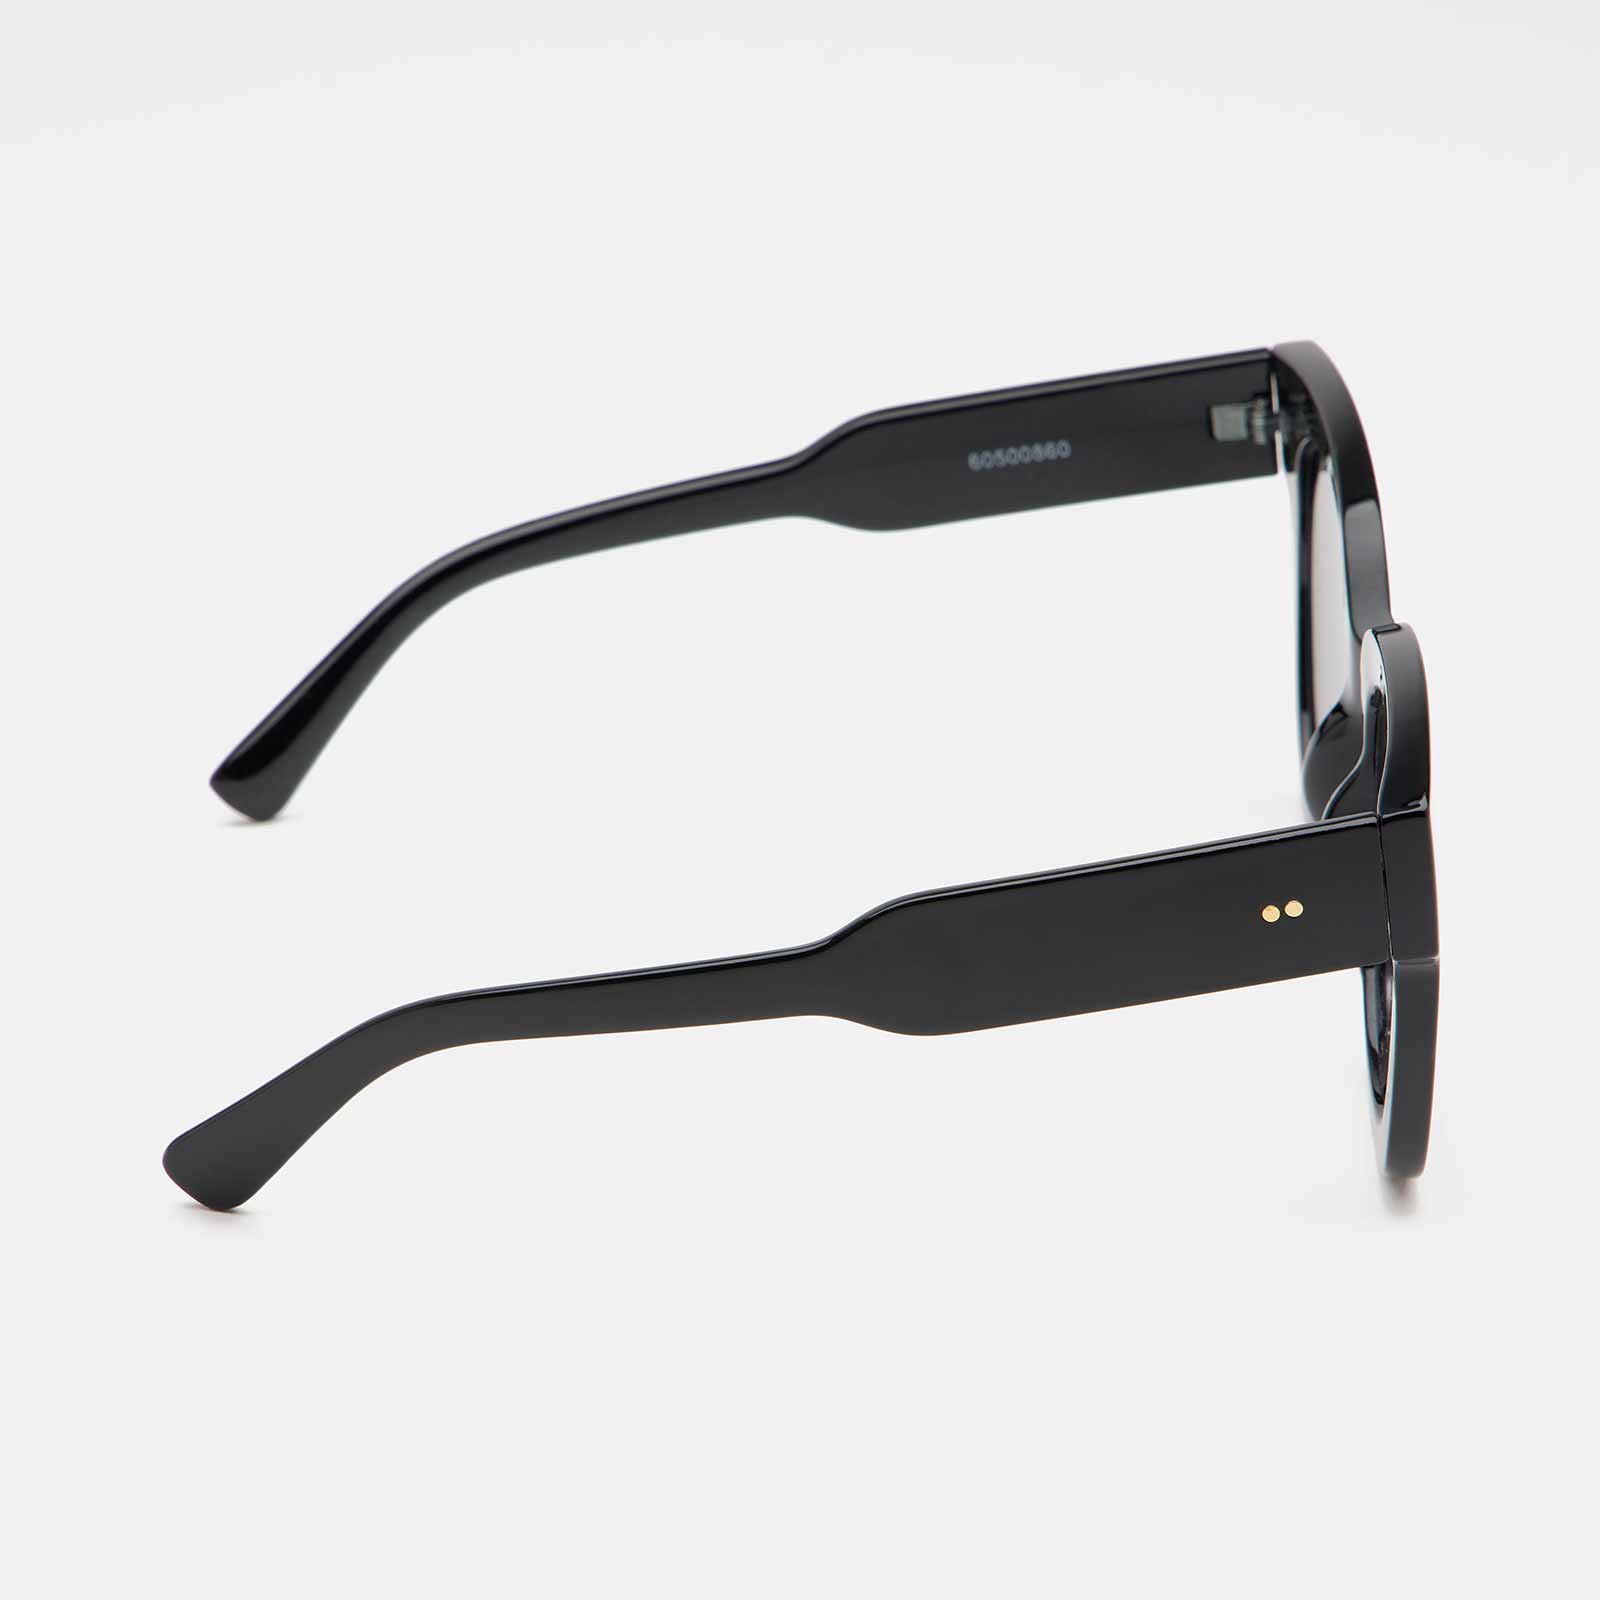 Solglasögon - svarta breda, retro